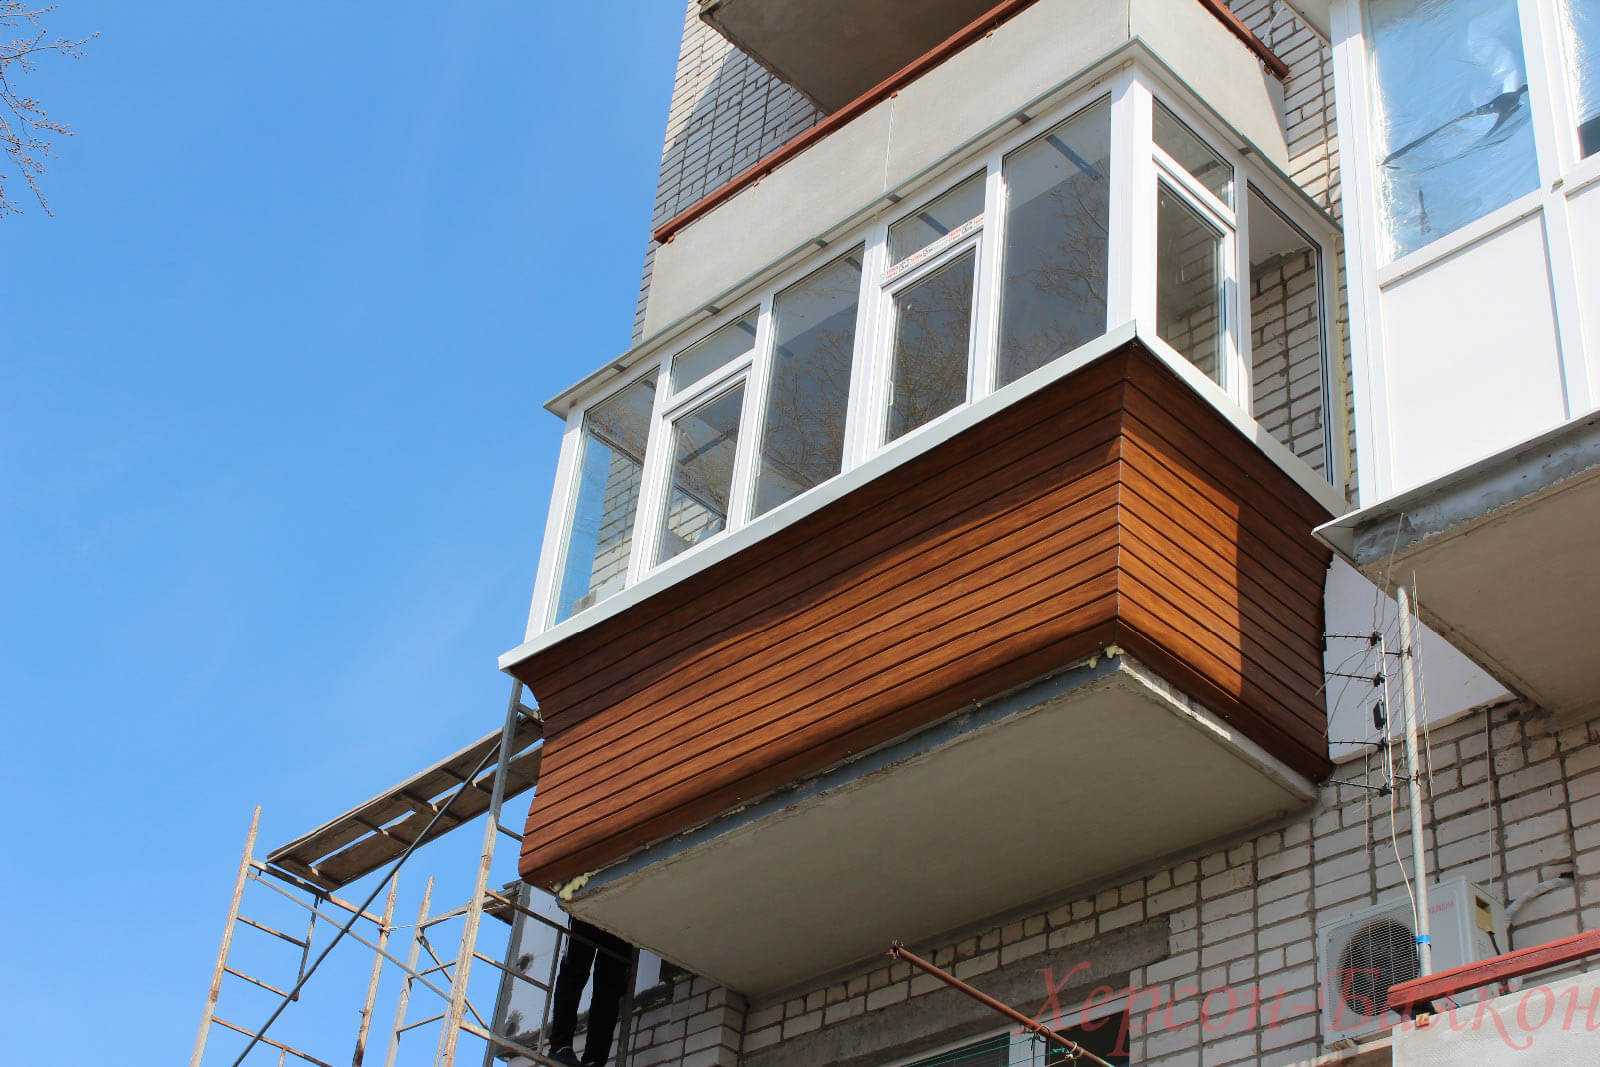 Остекление балкона с выносом (32 фото): как остеклить выносной по полу и с выносом подоконника